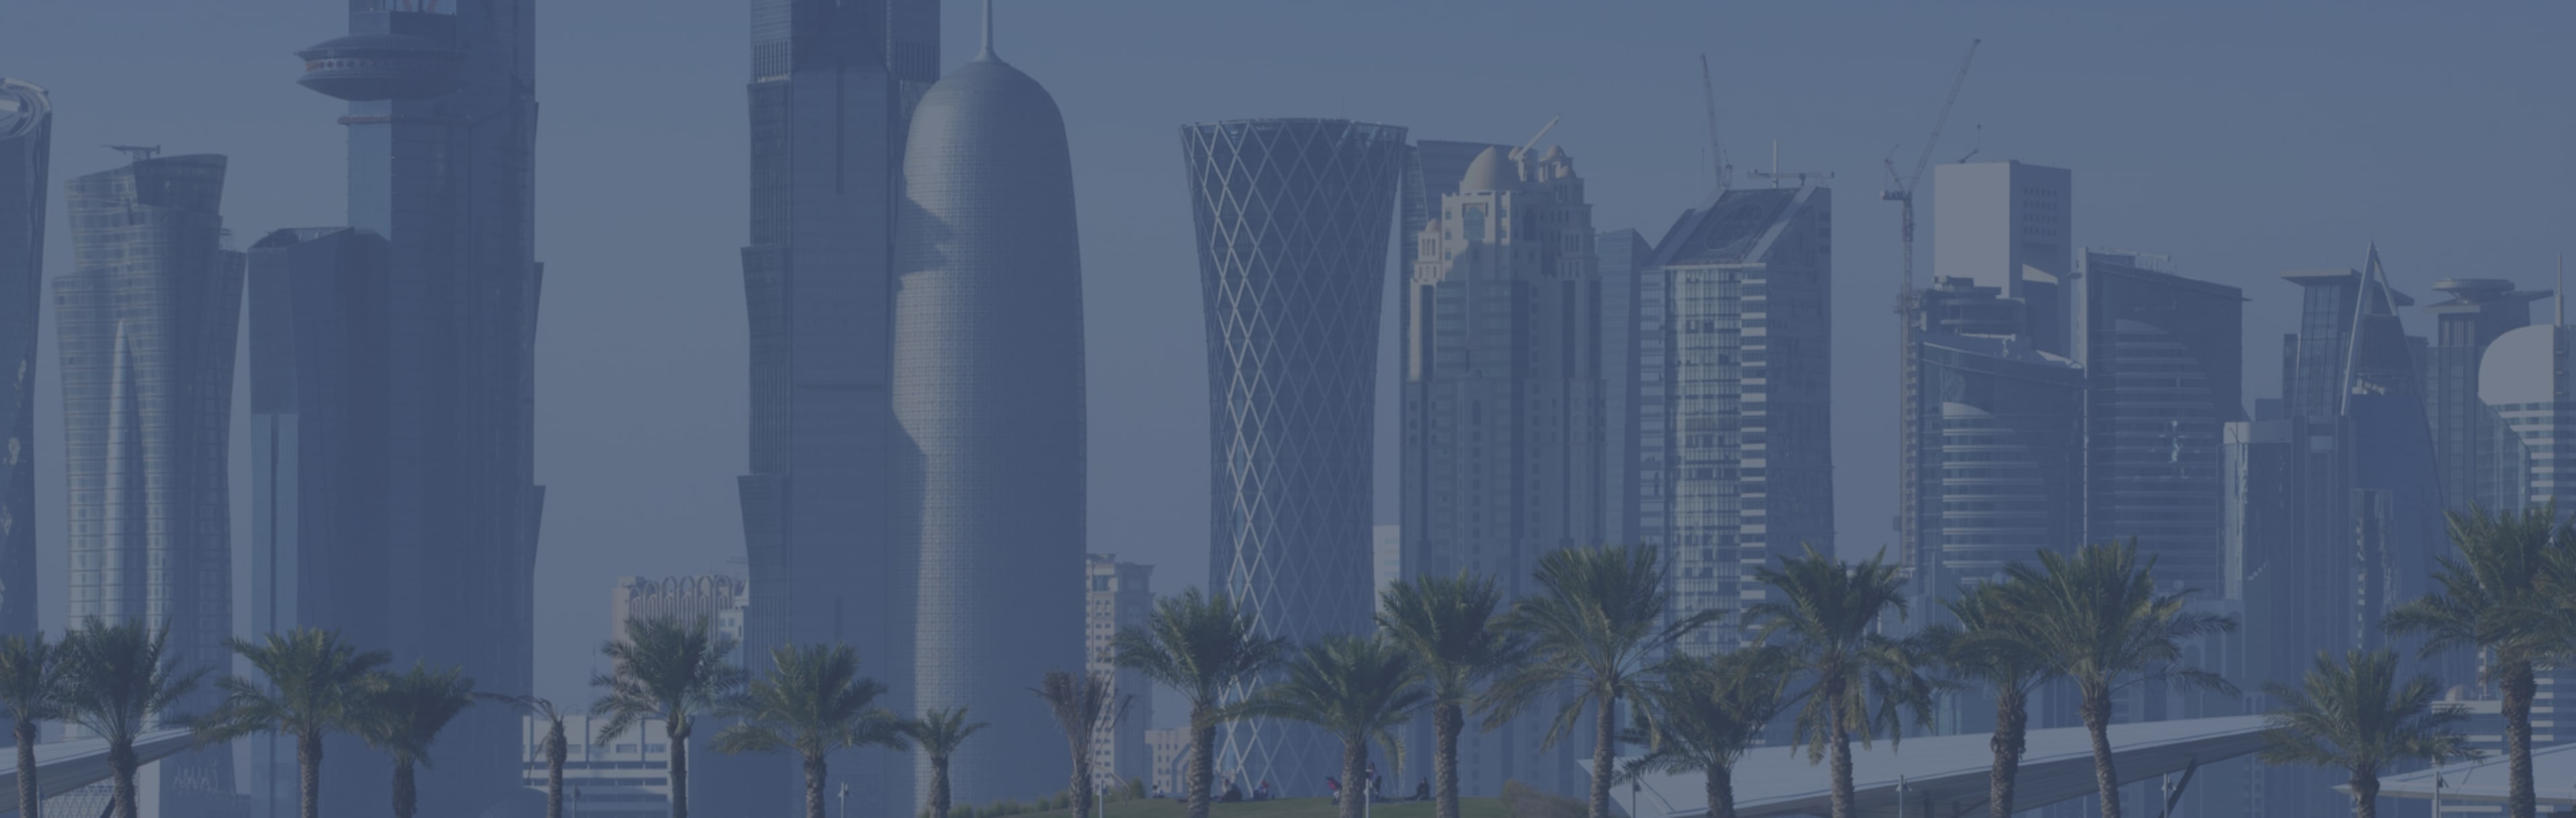 Kontakta skolor direkt - Jämför 5 MBA Program i Qatar 2023